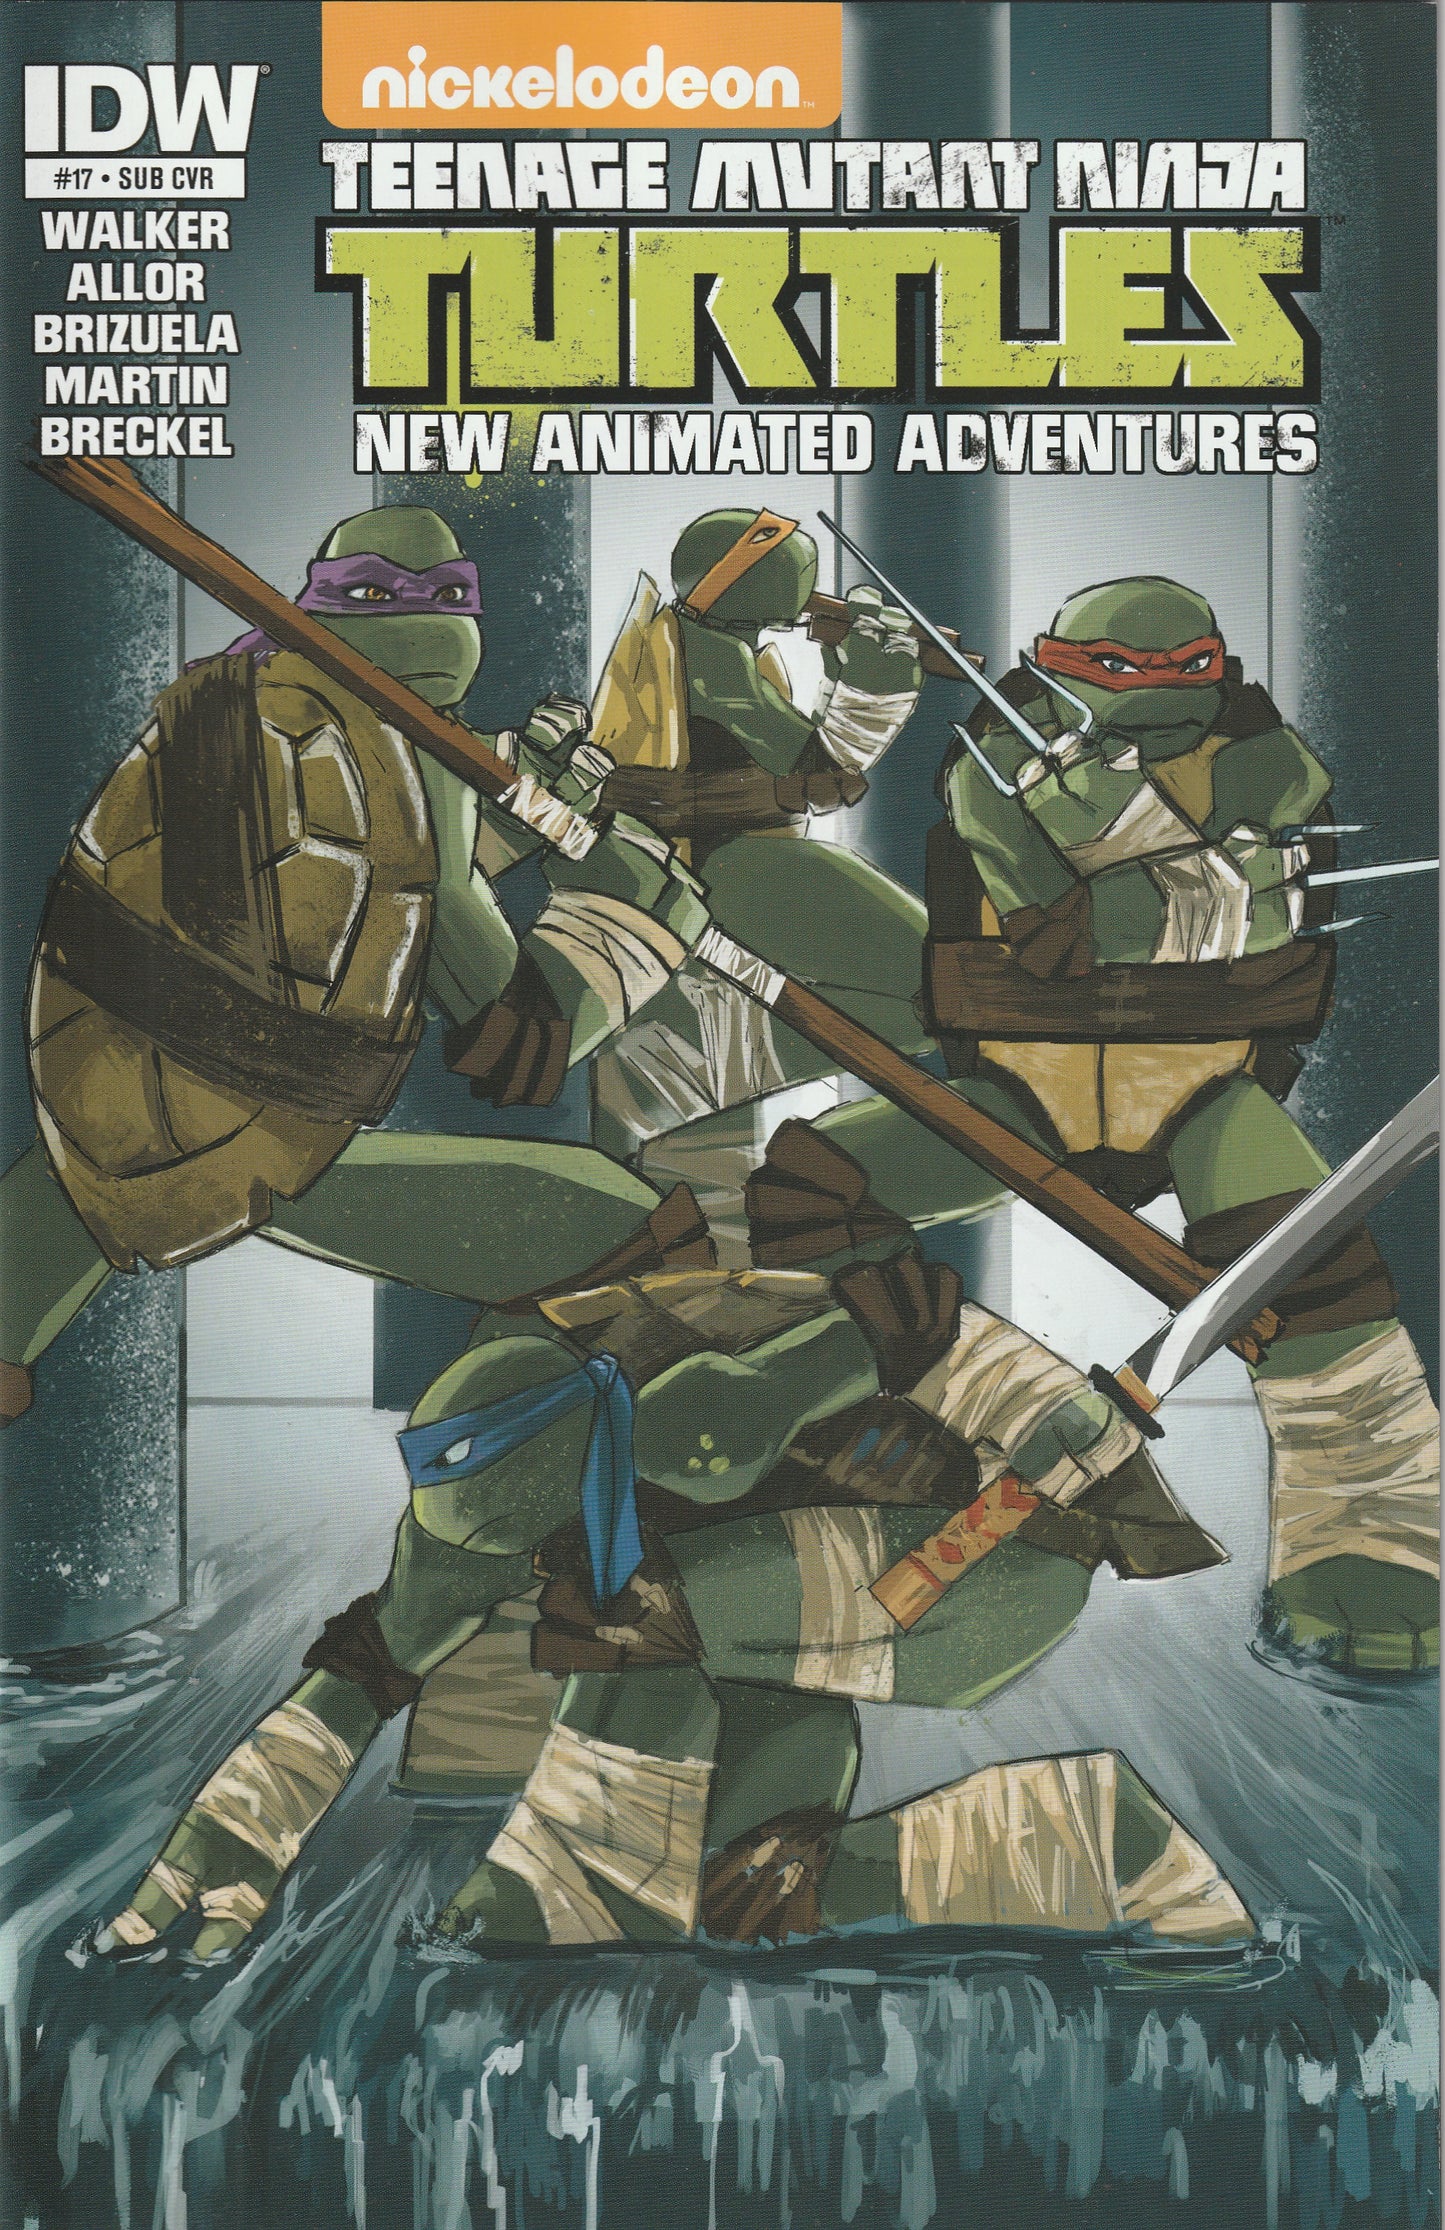 Teenage Mutant Ninja Turtles New Animated Adventures #17 (2014) - Tanna Tucker Subscription Variant Cover